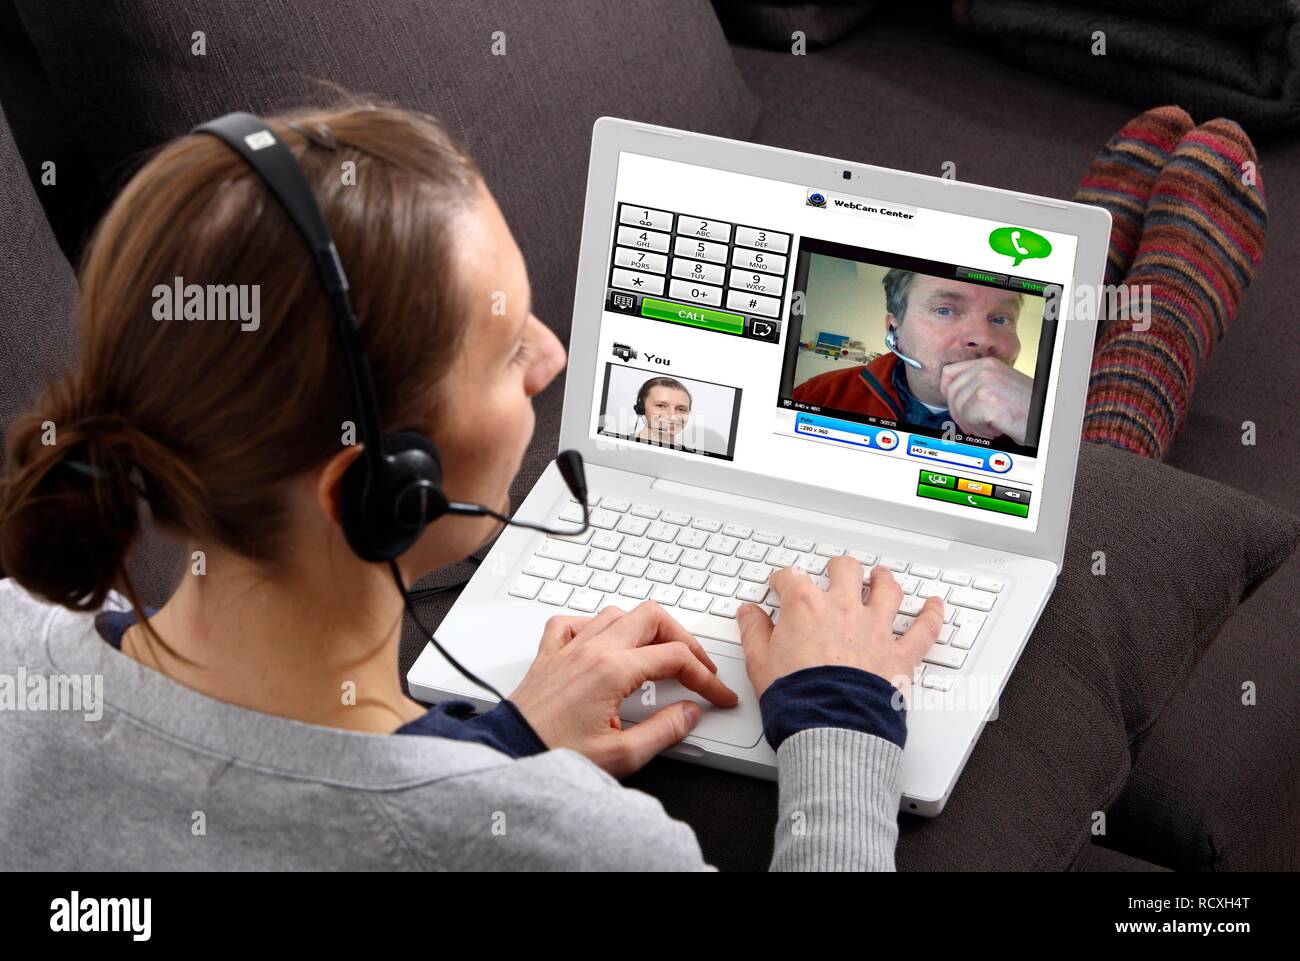 Giovane donna seduta con un computer portatile e di effettuare una chiamata via Internet, via webcam con le immagini live di entrambi Foto Stock